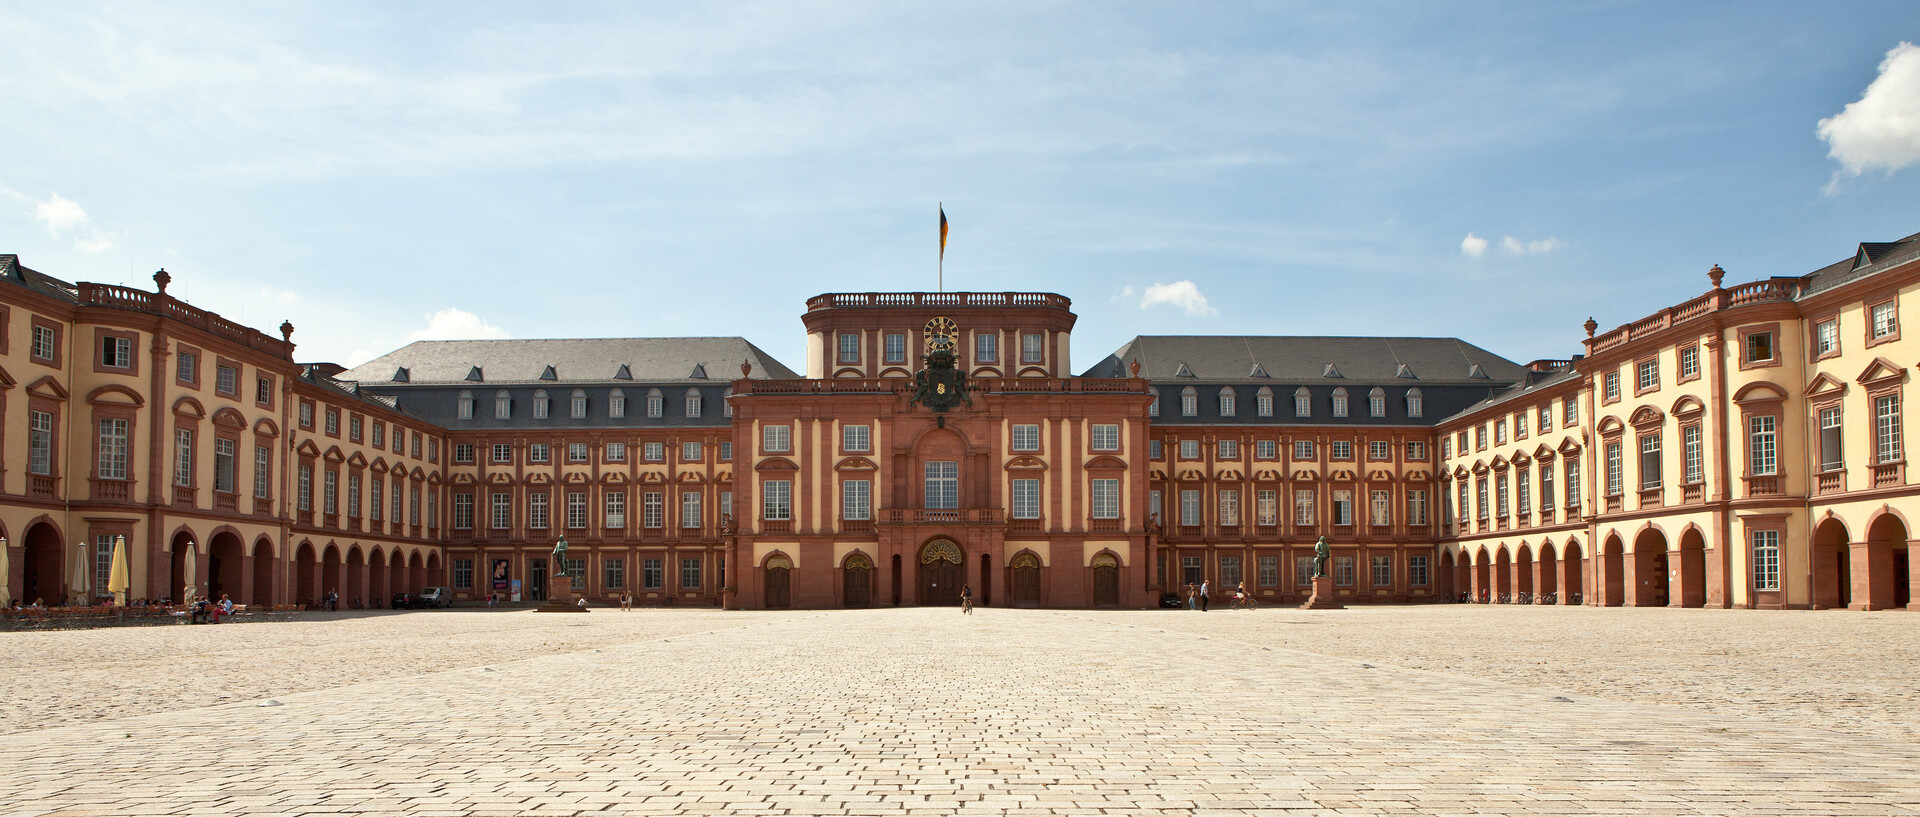 Das Mannheimer Barockschloss und der Ehrenhof unter blauem Himmel.